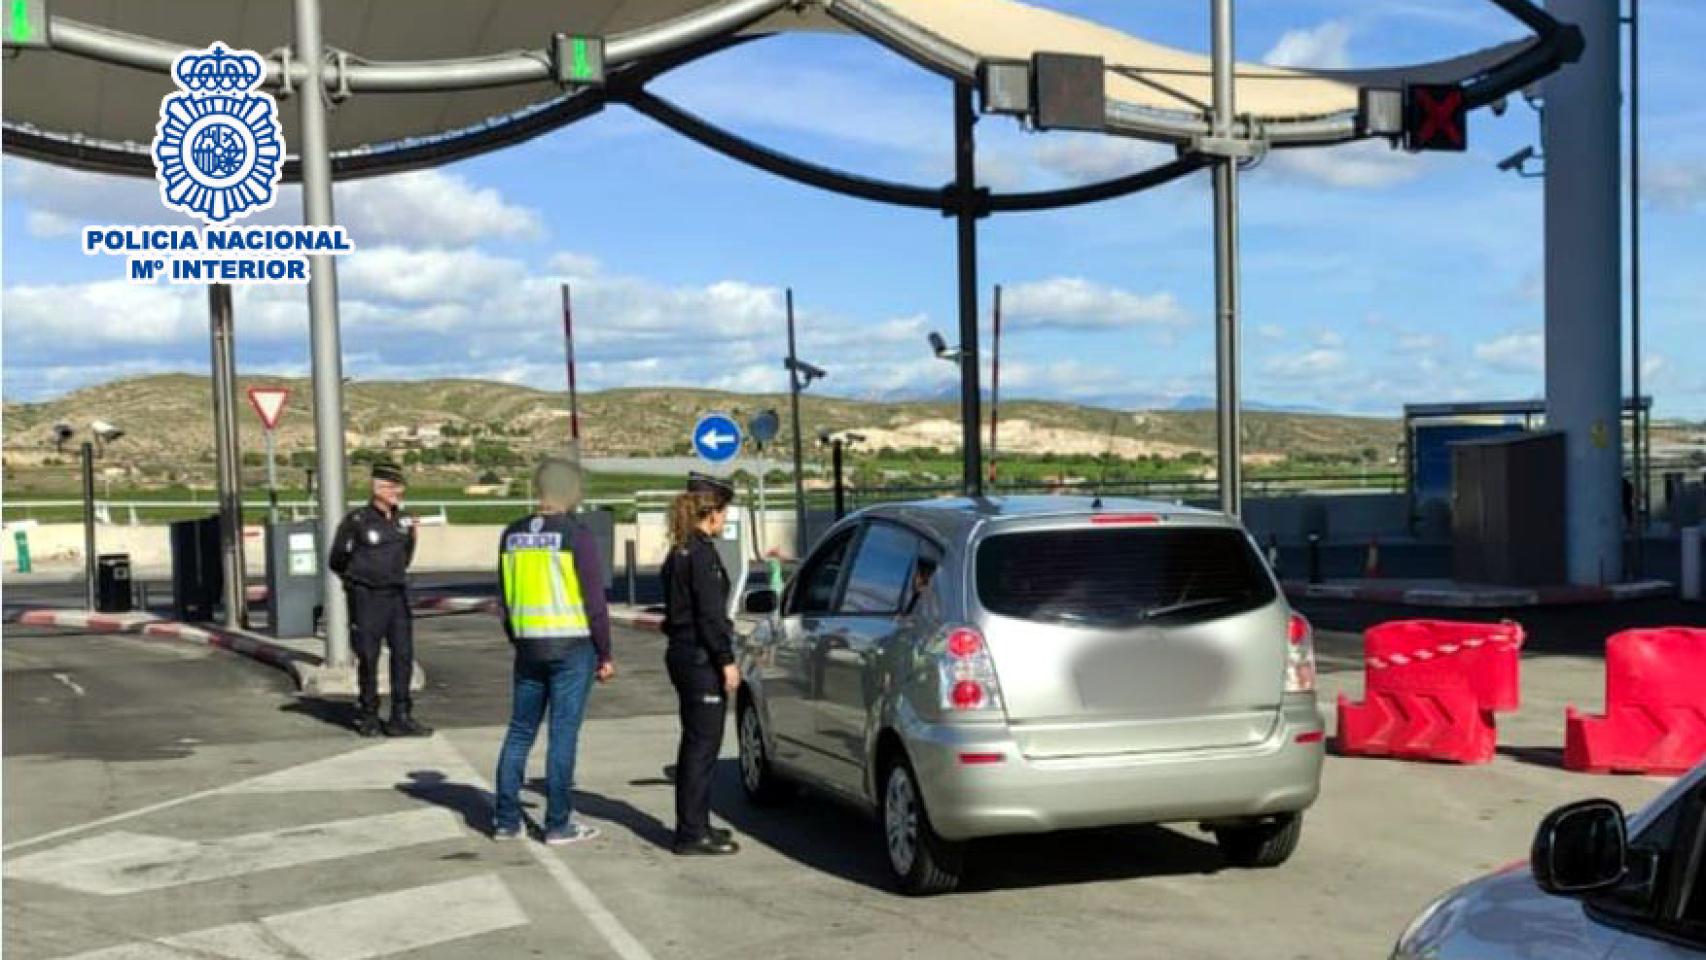 Medio centenar de vehículos se cuelan en el aeropuerto de Alicante.